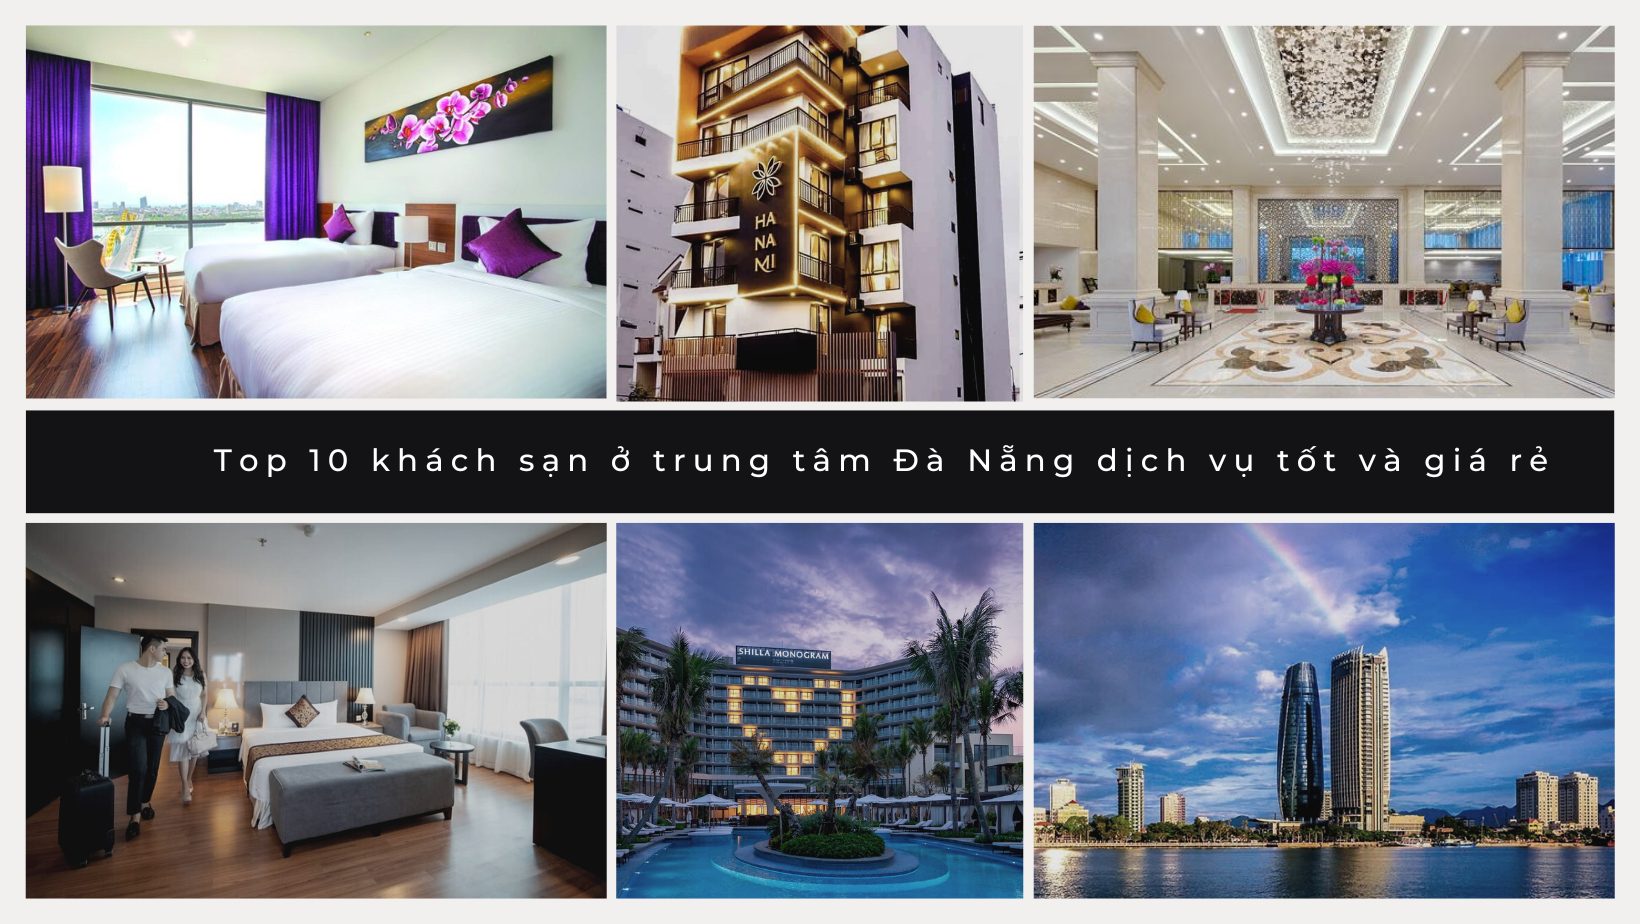 Top 10 khách sạn ở trung tâm Đà Nẵng dịch vụ tốt và giá rẻ